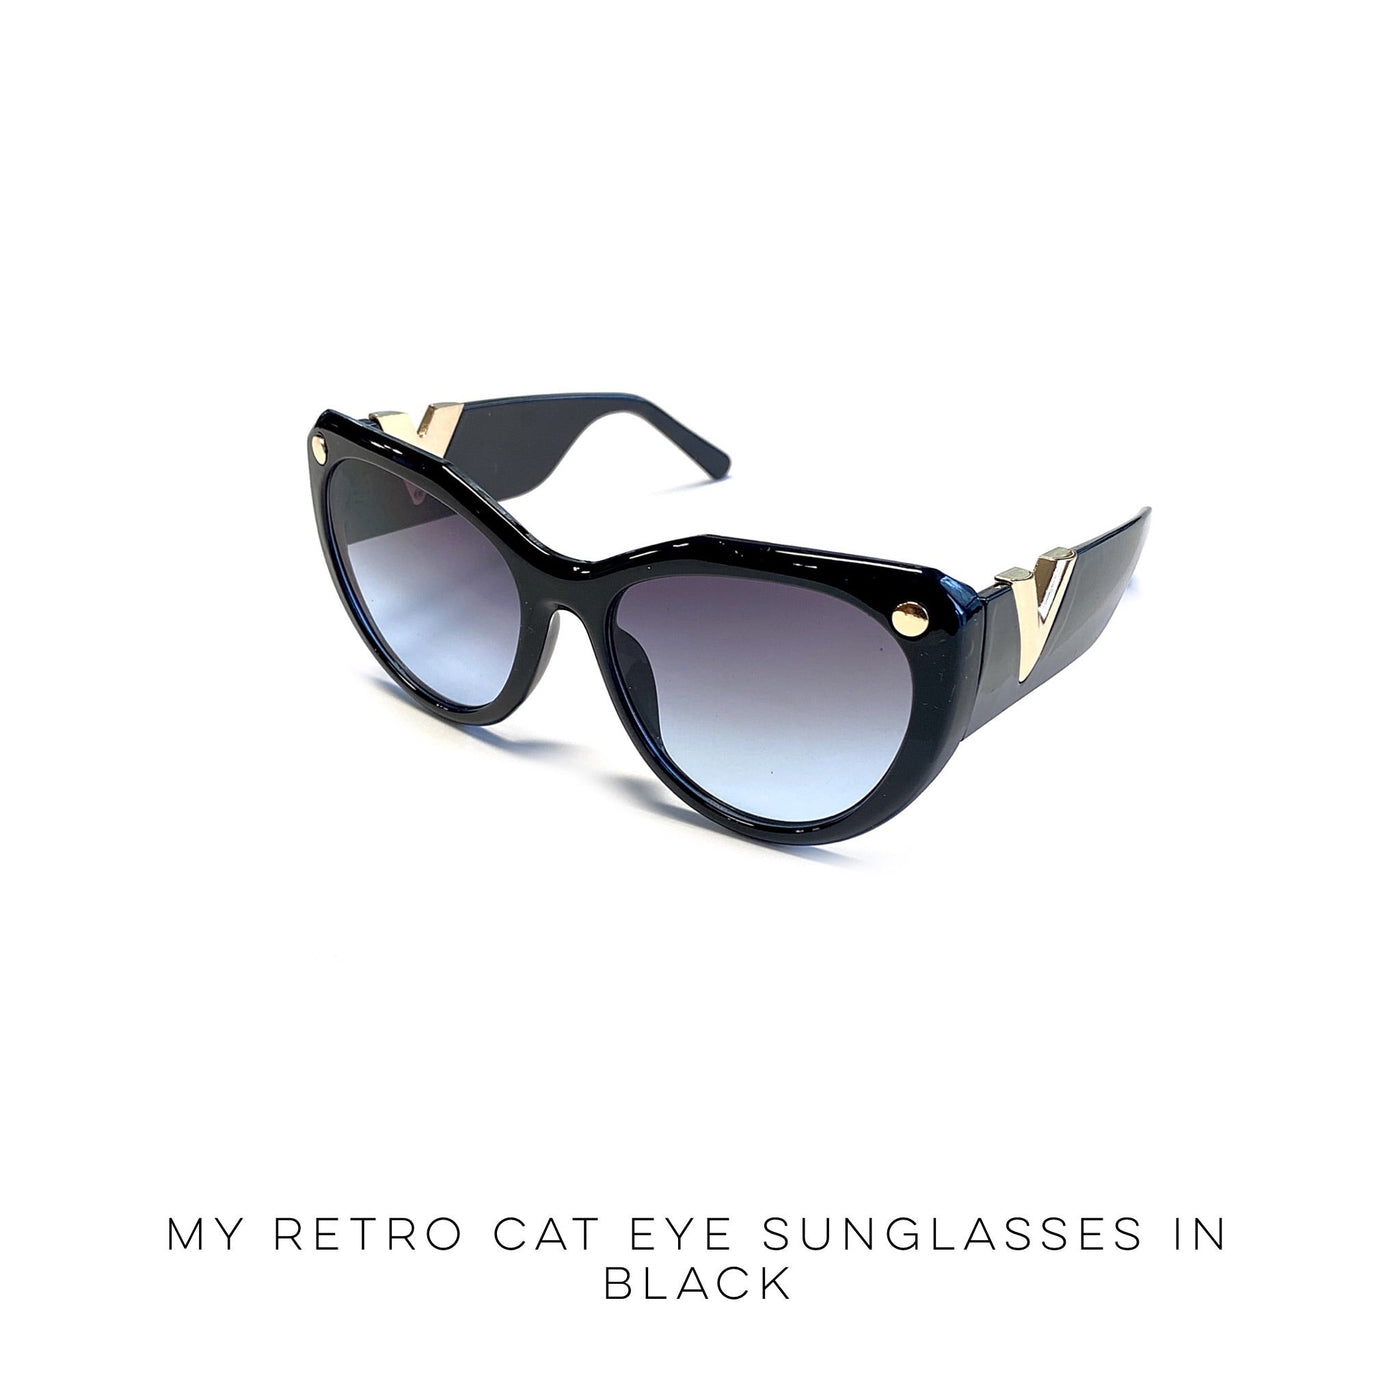 My Retro Cat Eye Sunglasses in Black - Copper + Rose